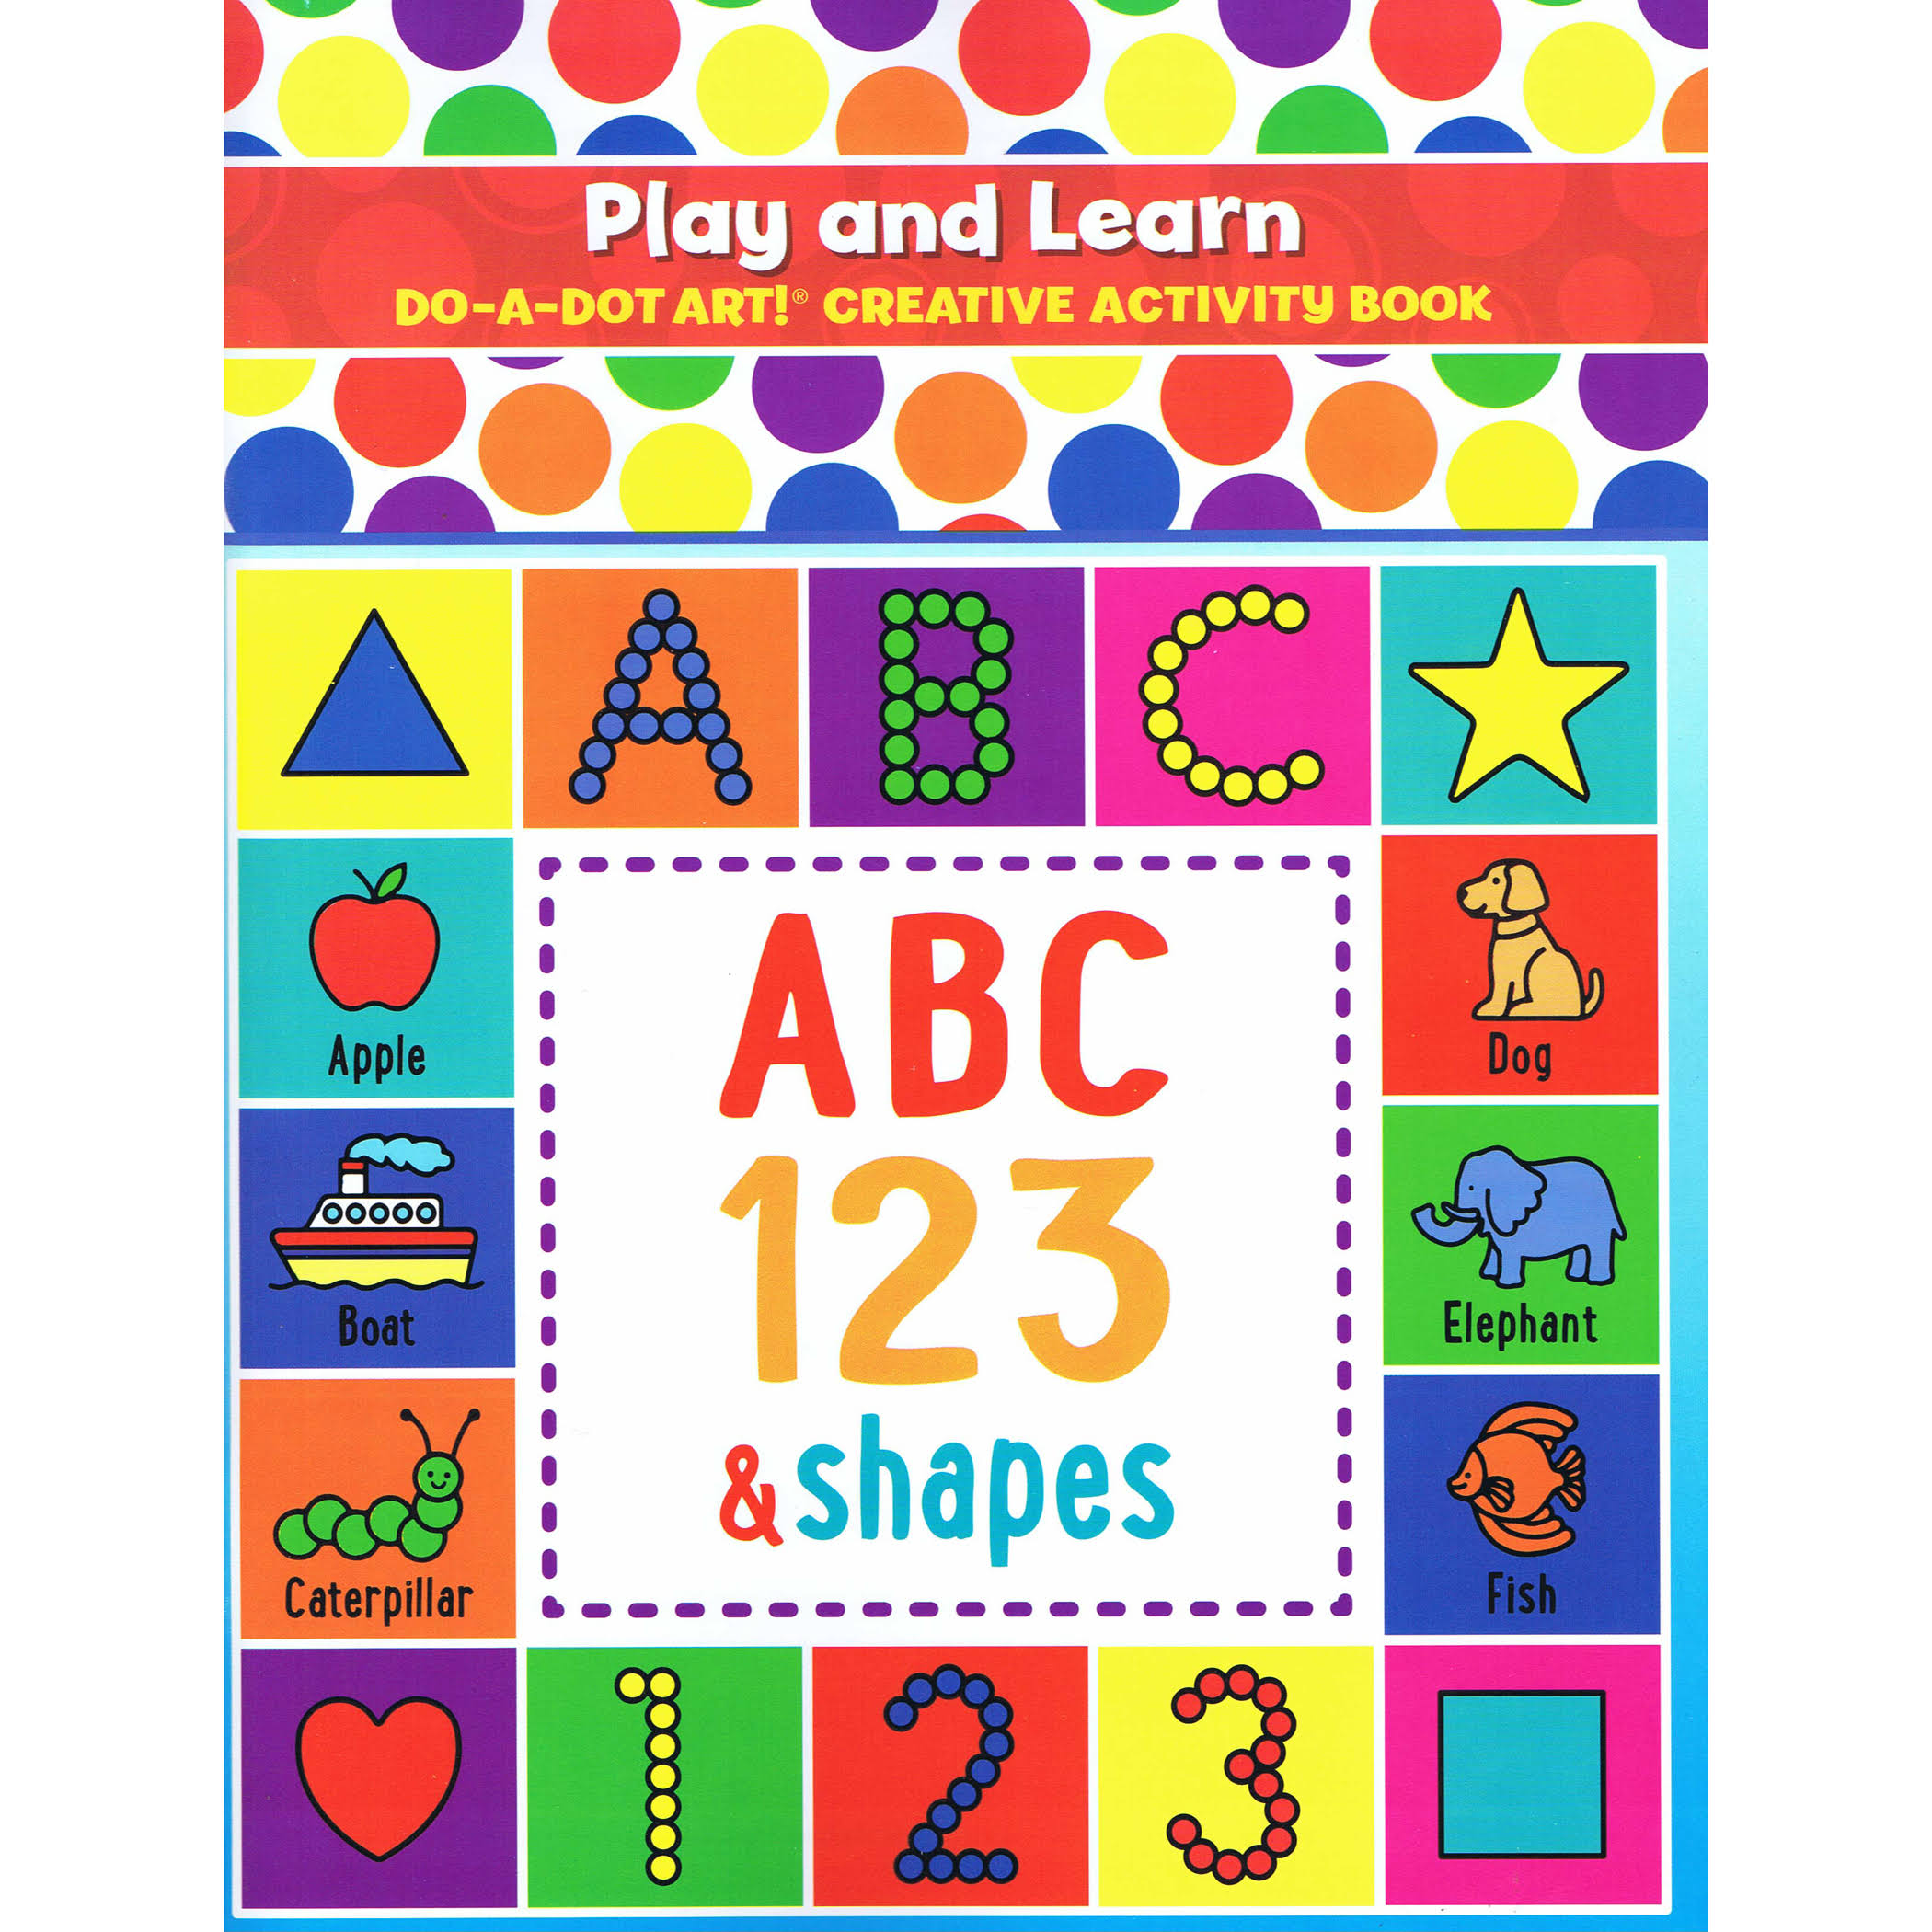 Play & Learn Do-a-Dot Creative Activity Book